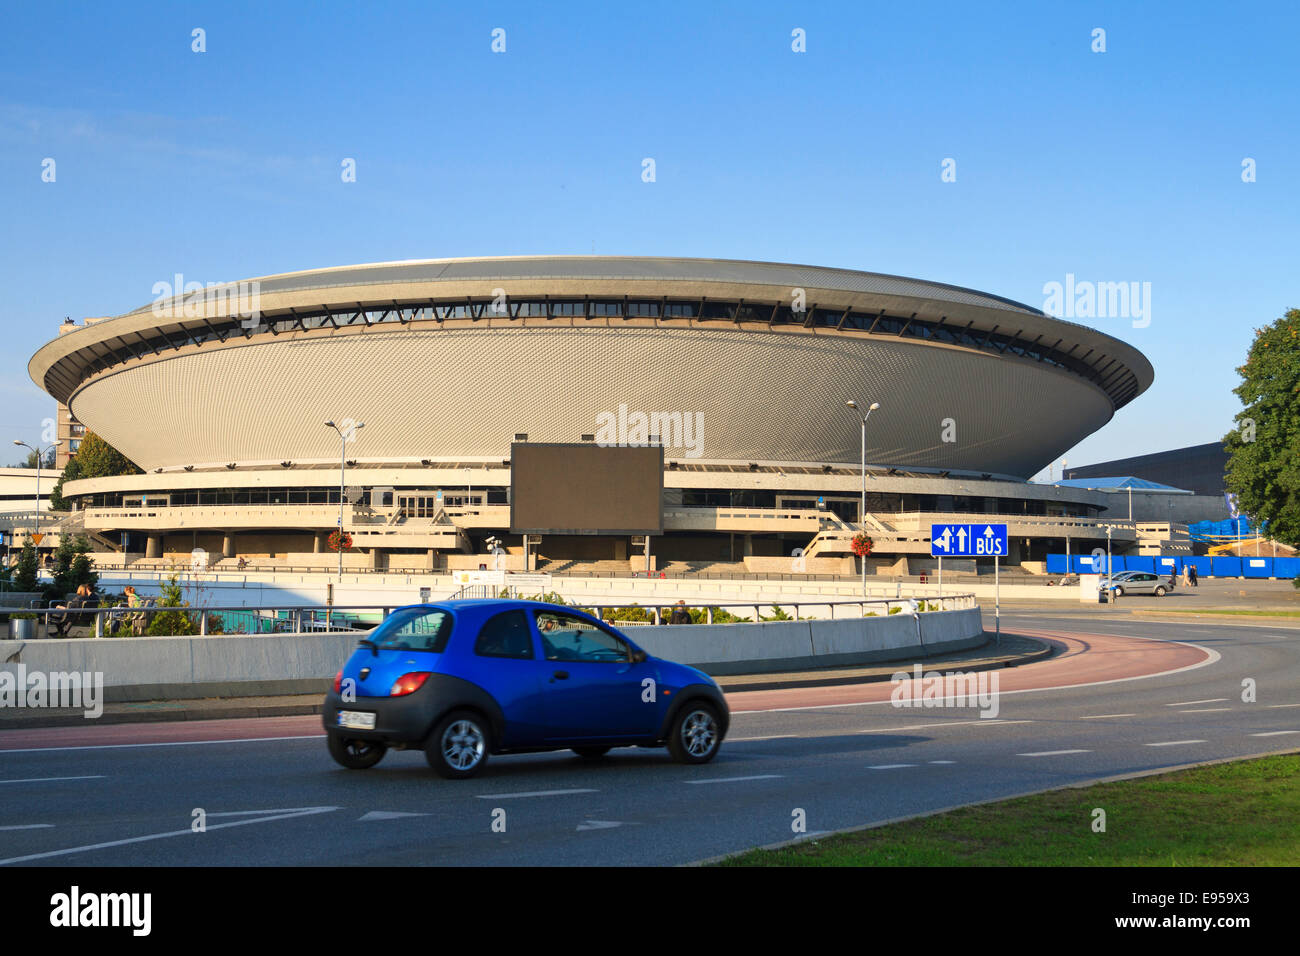 Spodek" sport and entertainment arena in Katowice, Poland Stock Photo -  Alamy